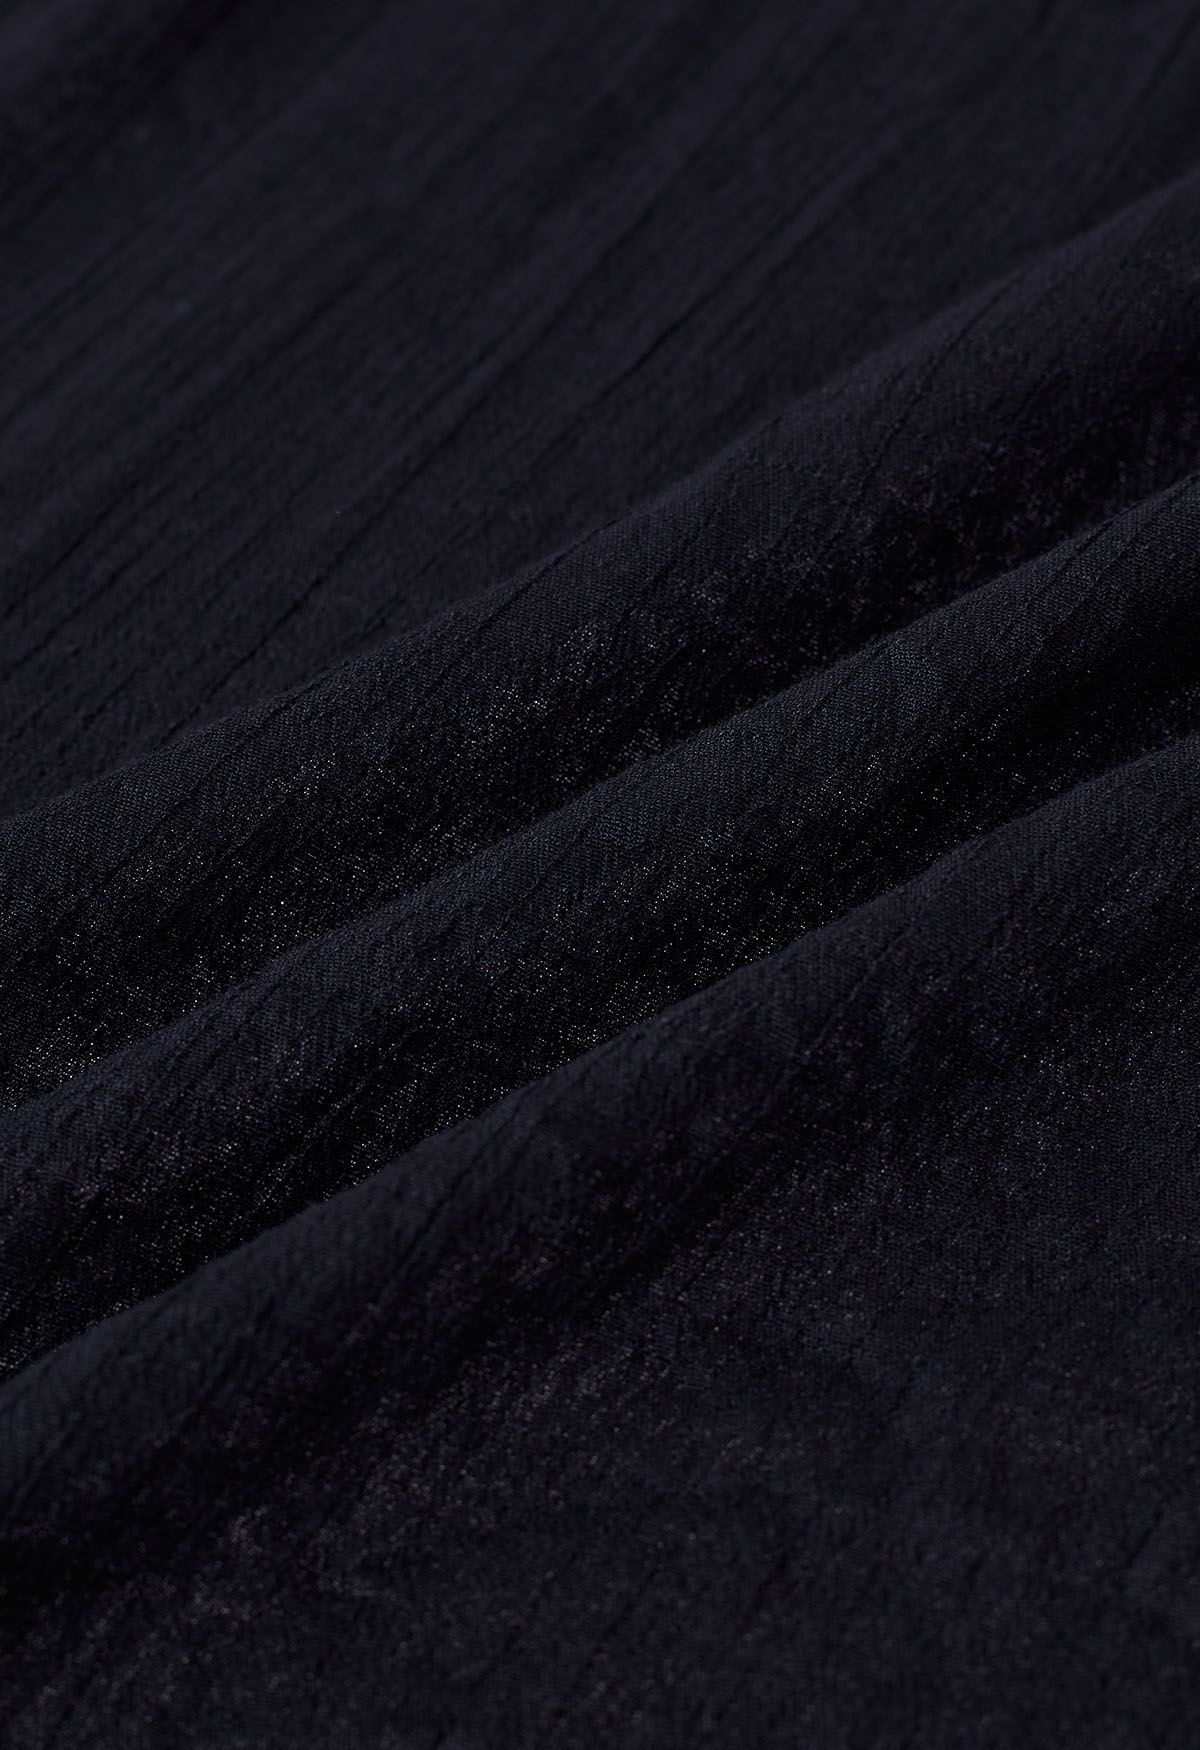 غطاء كروشيه متباين من بوهو باللون الأسود